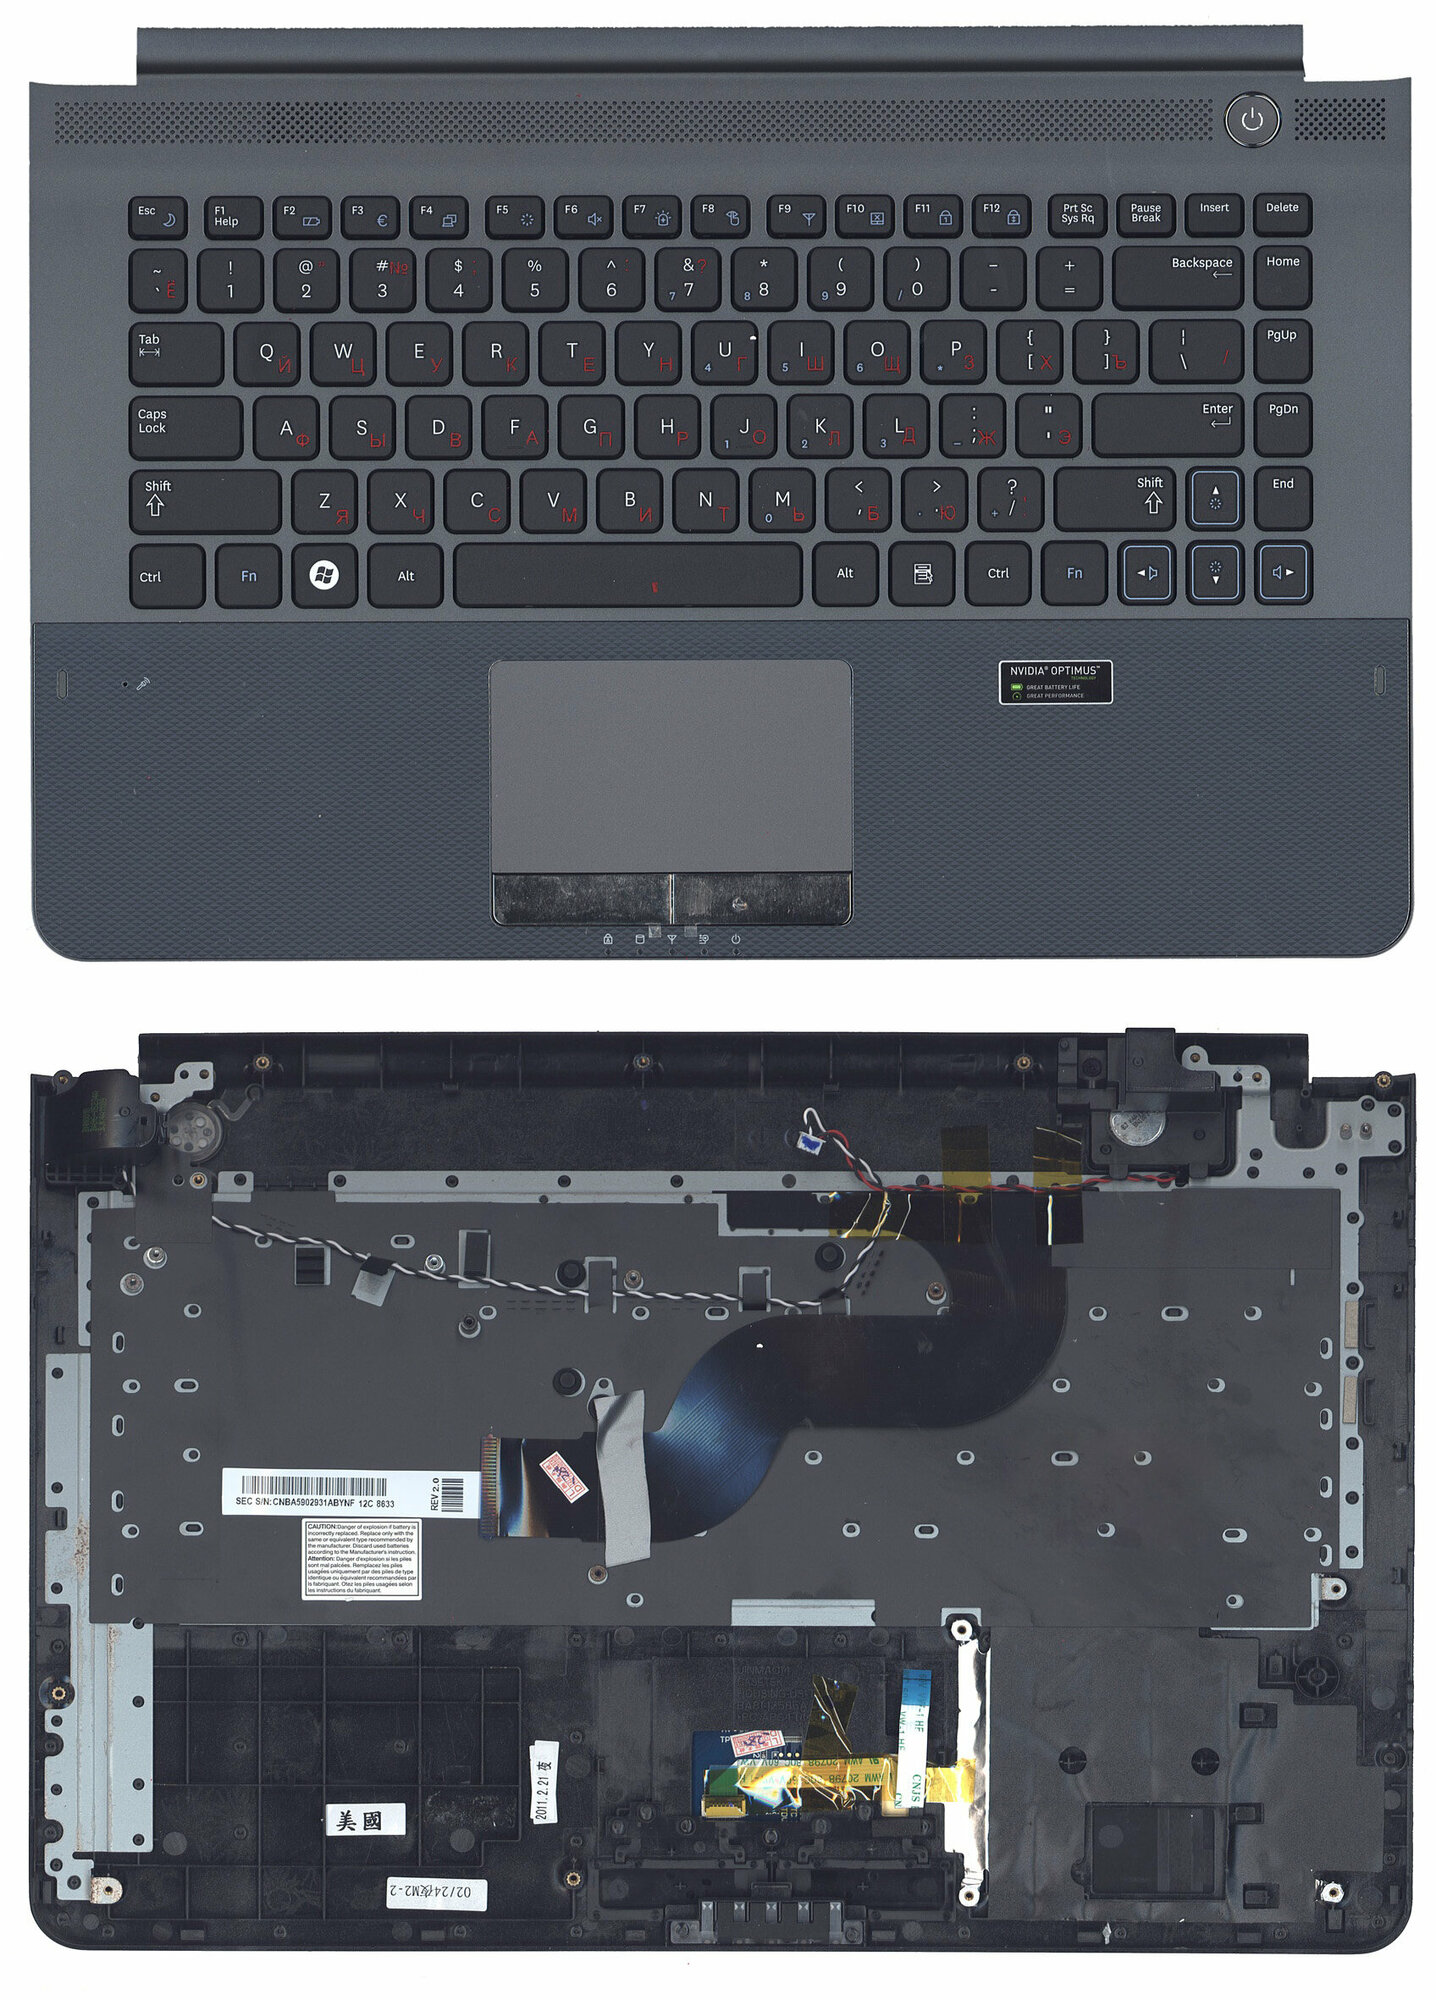 Клавиатура для Samsumg RC410 серая топ-панель